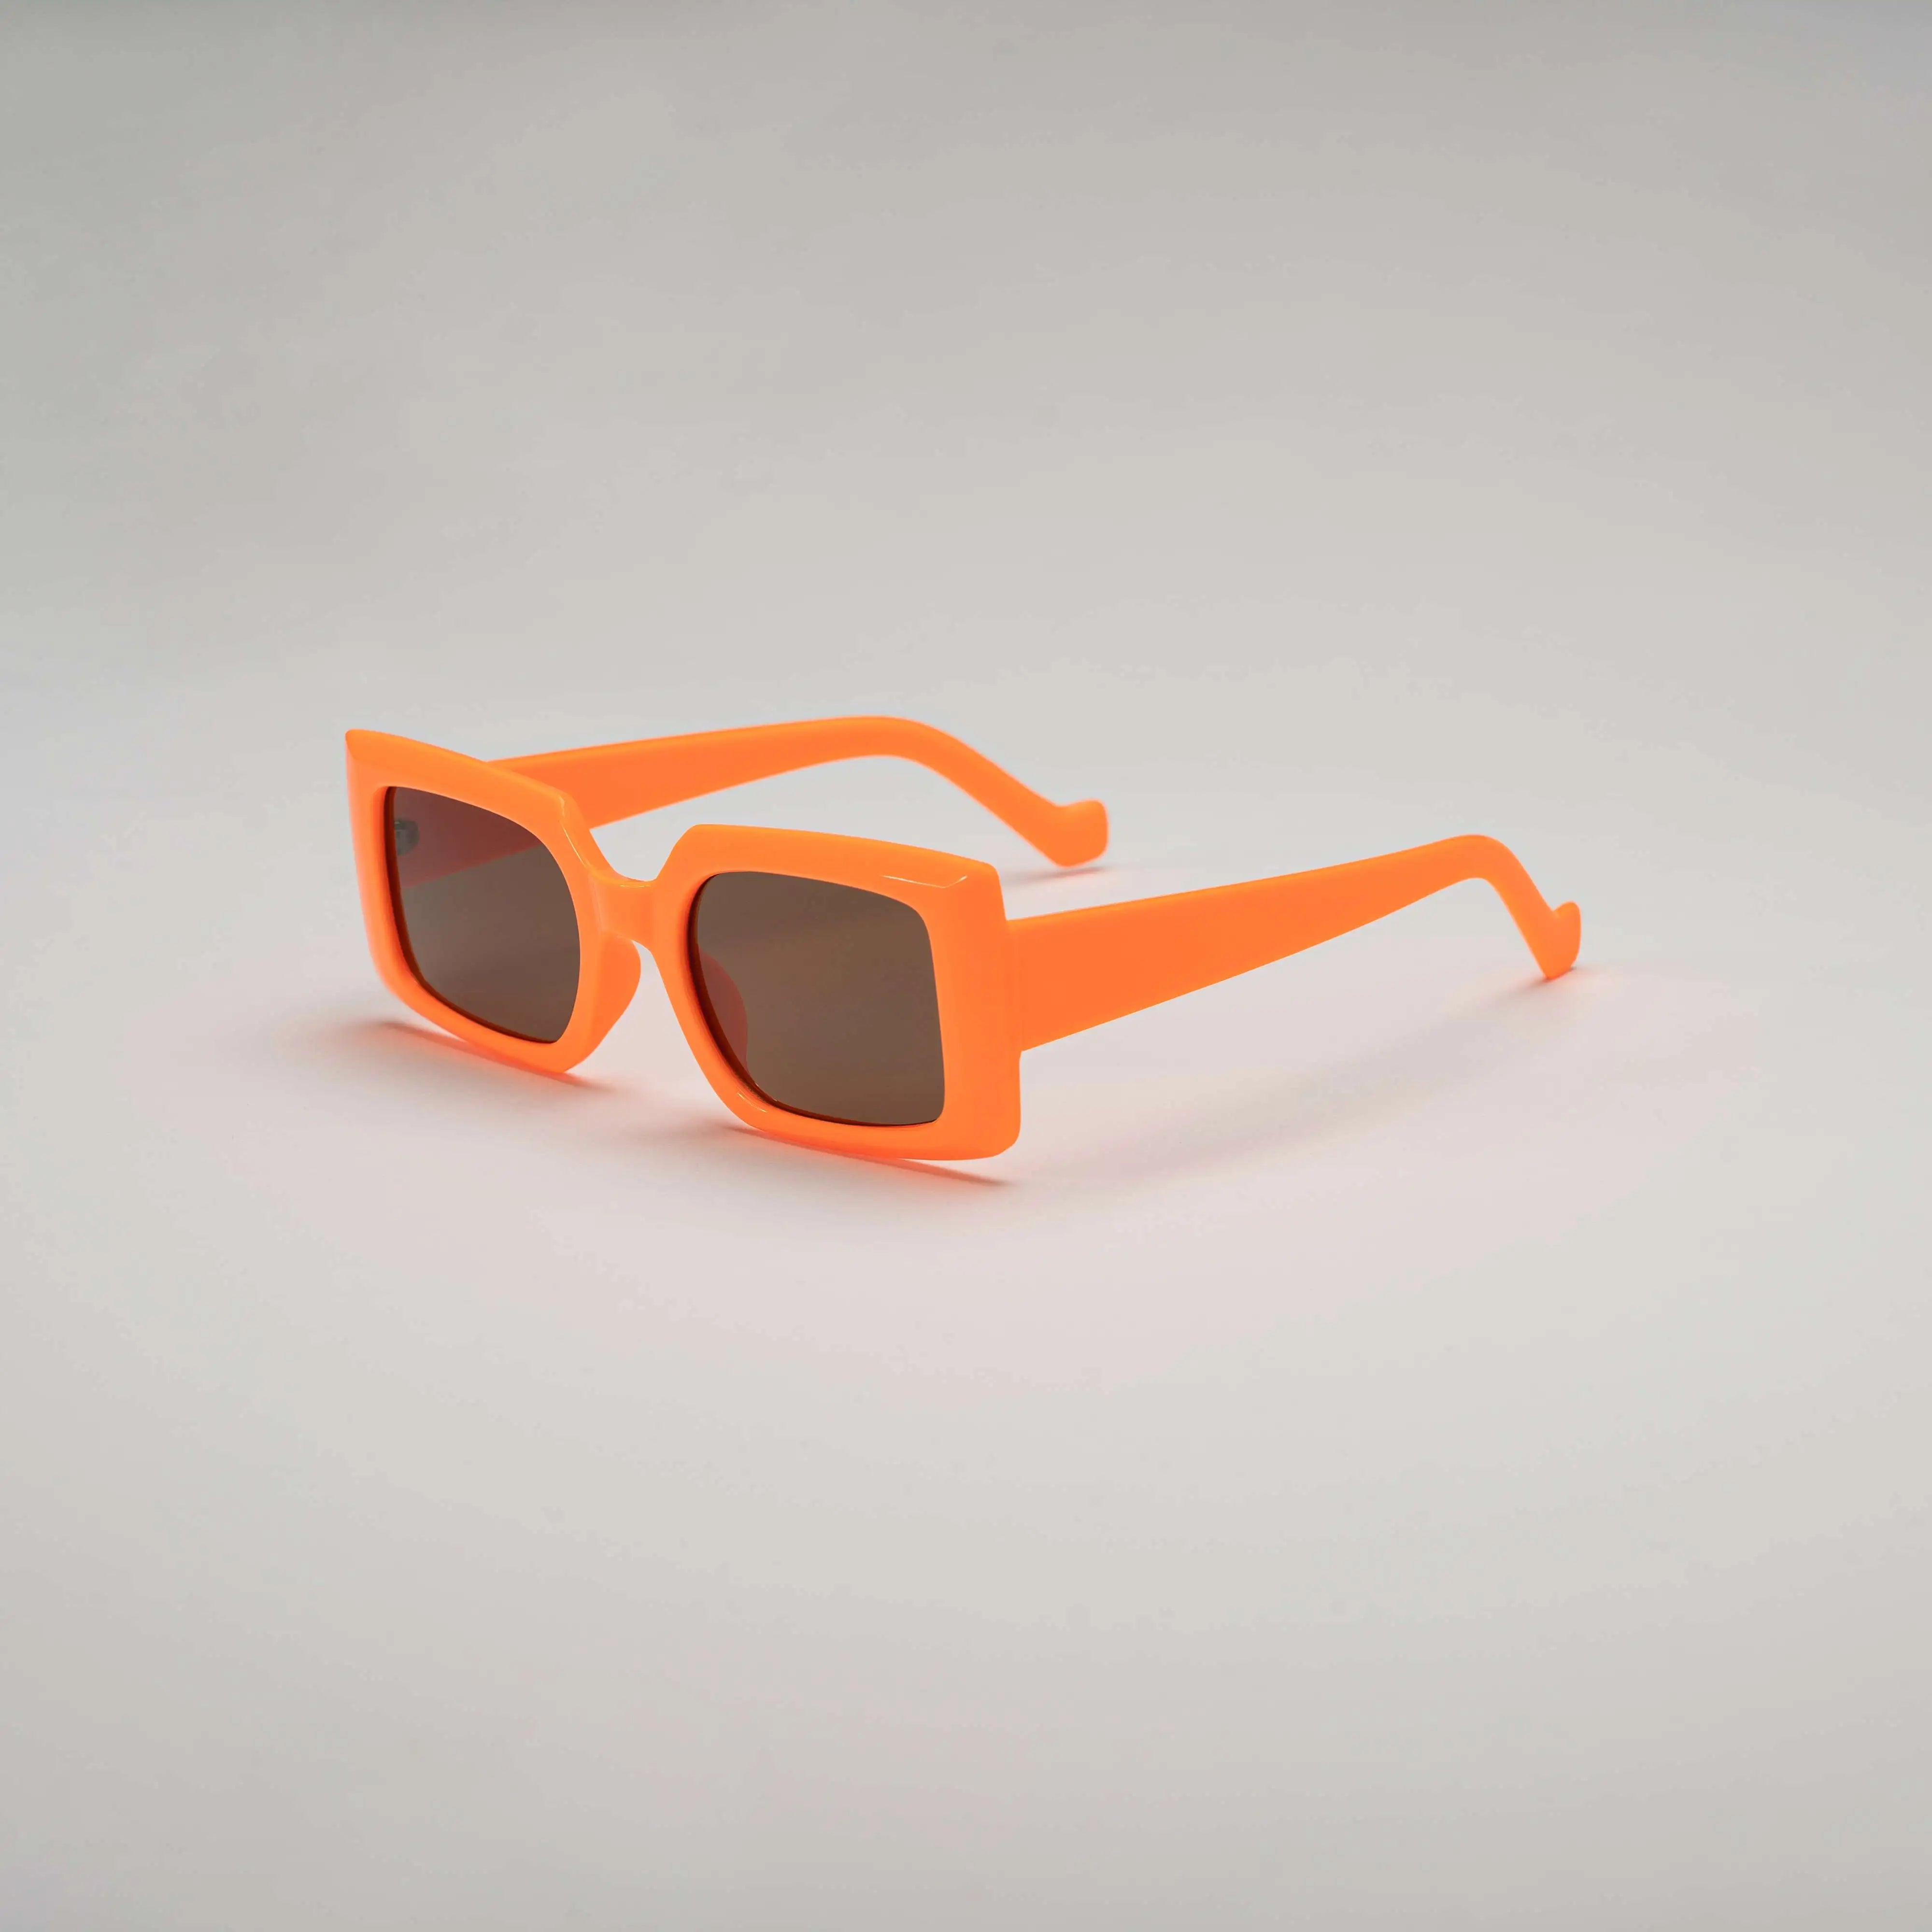 'Overdrive' Retro Square Sunglasses in Orange